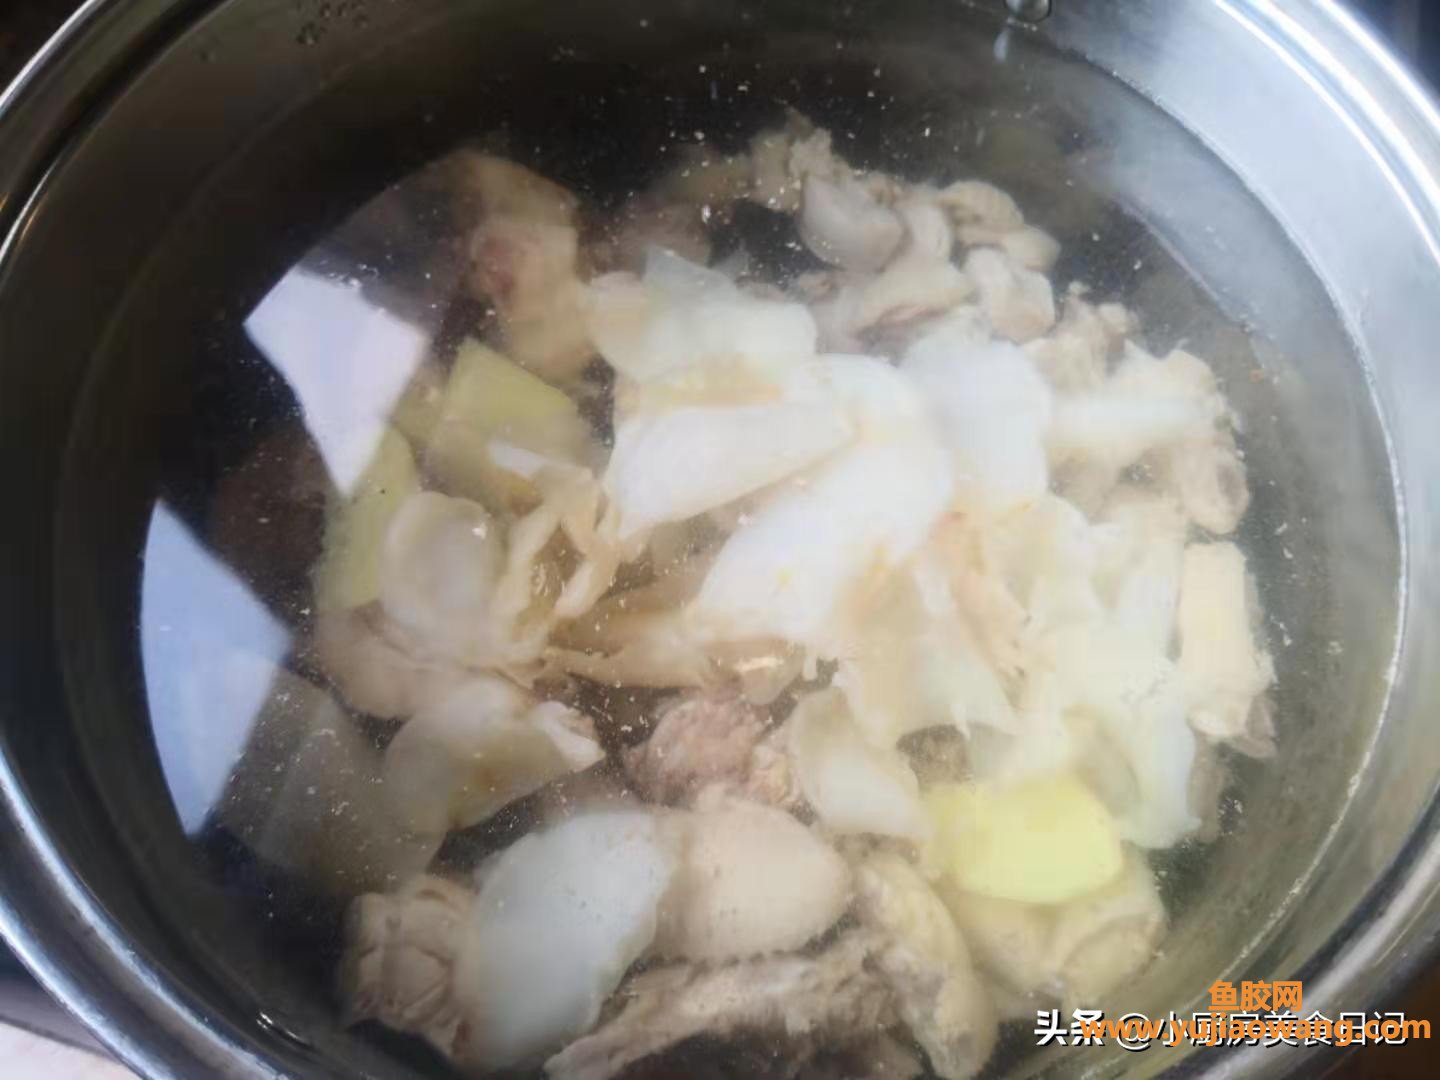 (鸡肉羊肚菌鱼胶汤)非常时期，给家人炖一锅鲜美的羊肚菌花胶鸡汤，增